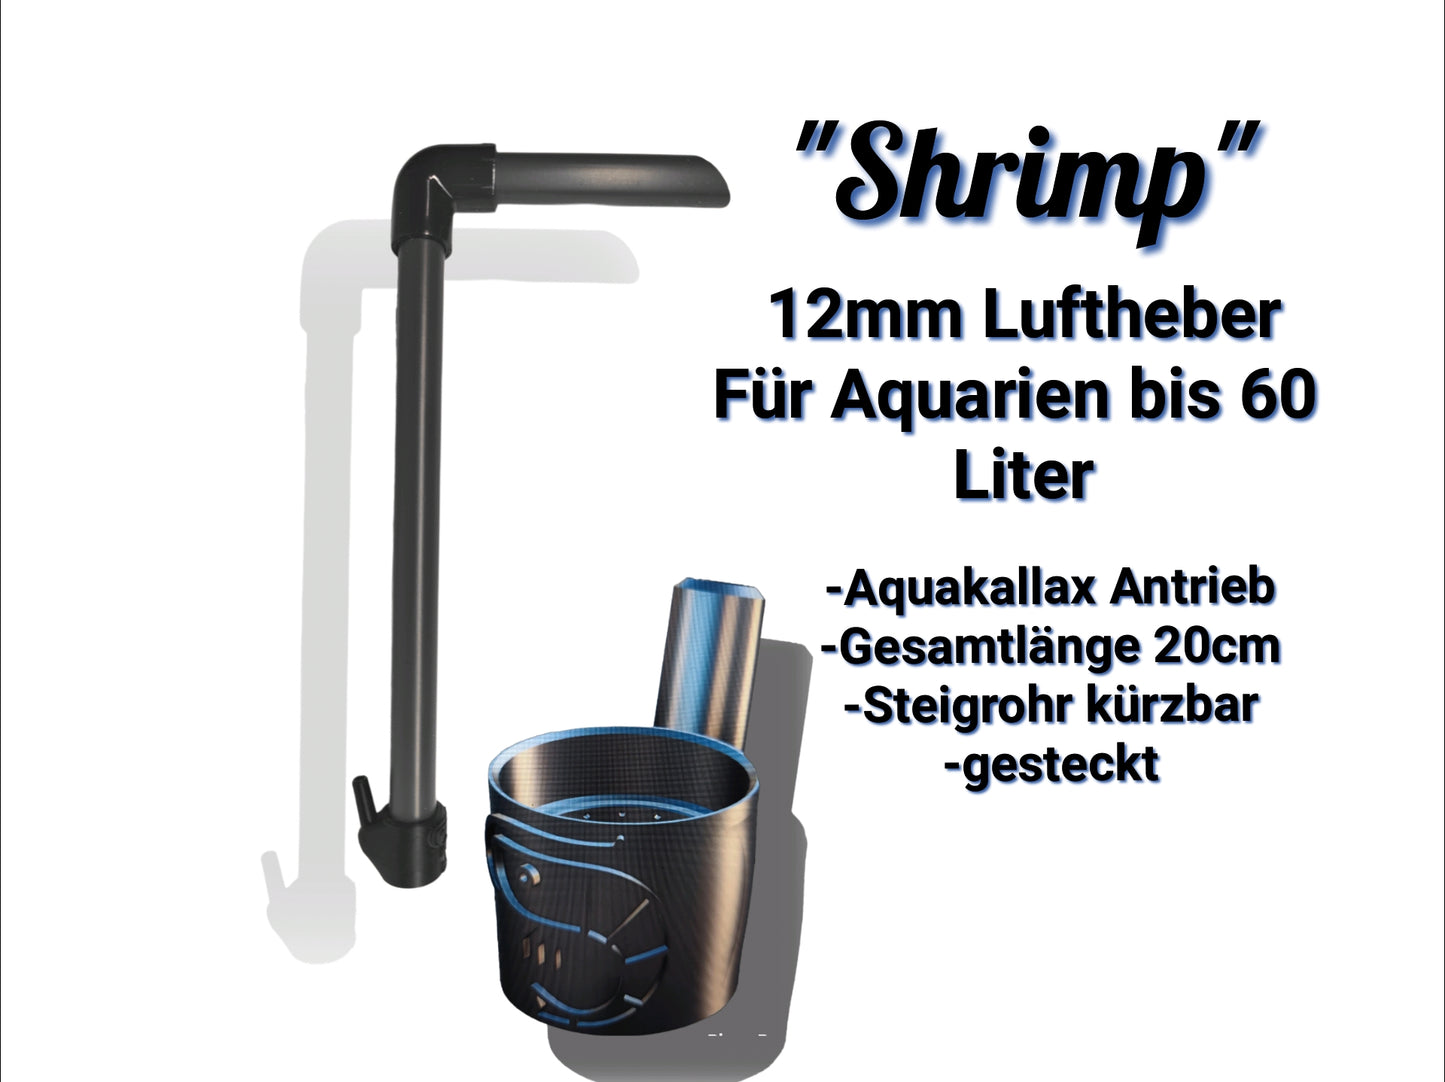 ShrimpPuddle Antriebsteile für Luftheber – Aquakallax